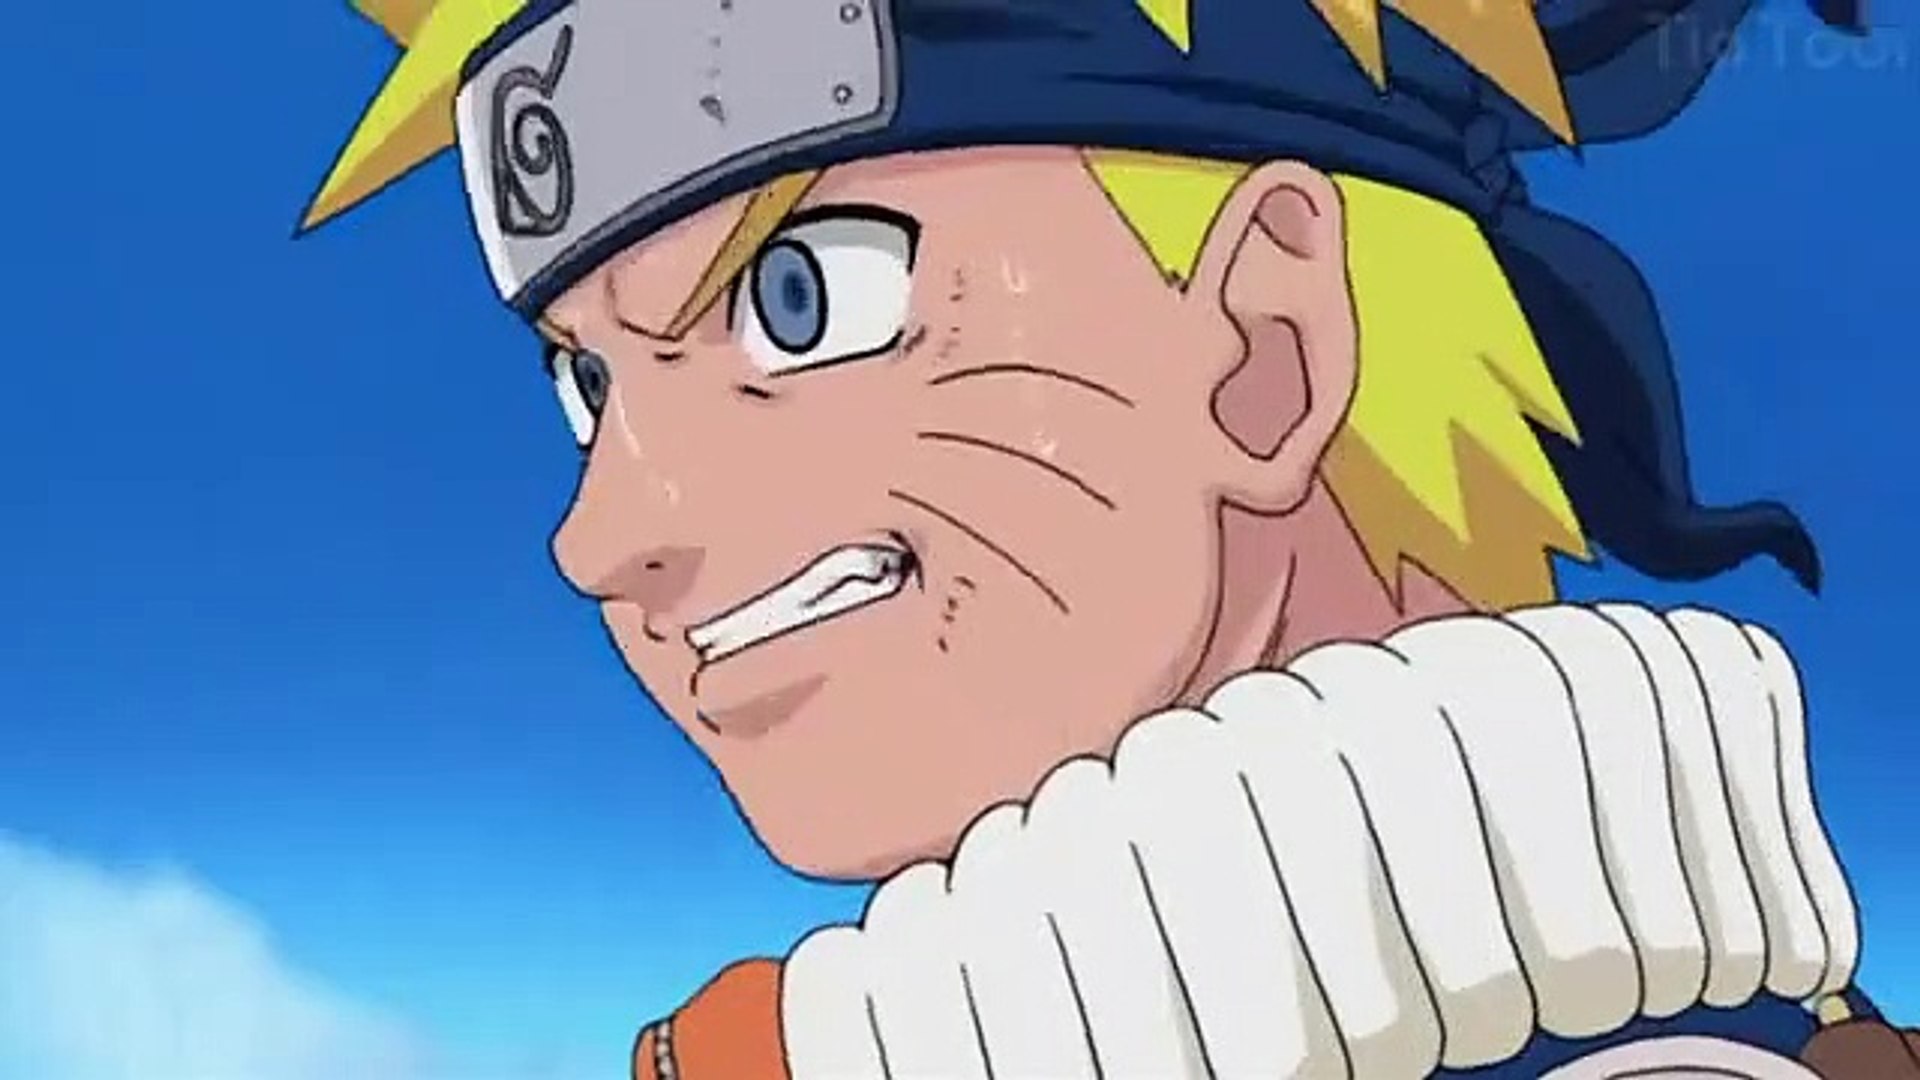 Naruto vs Sasuke Dublado - Naruto Shippuden Dublado - Bilibili